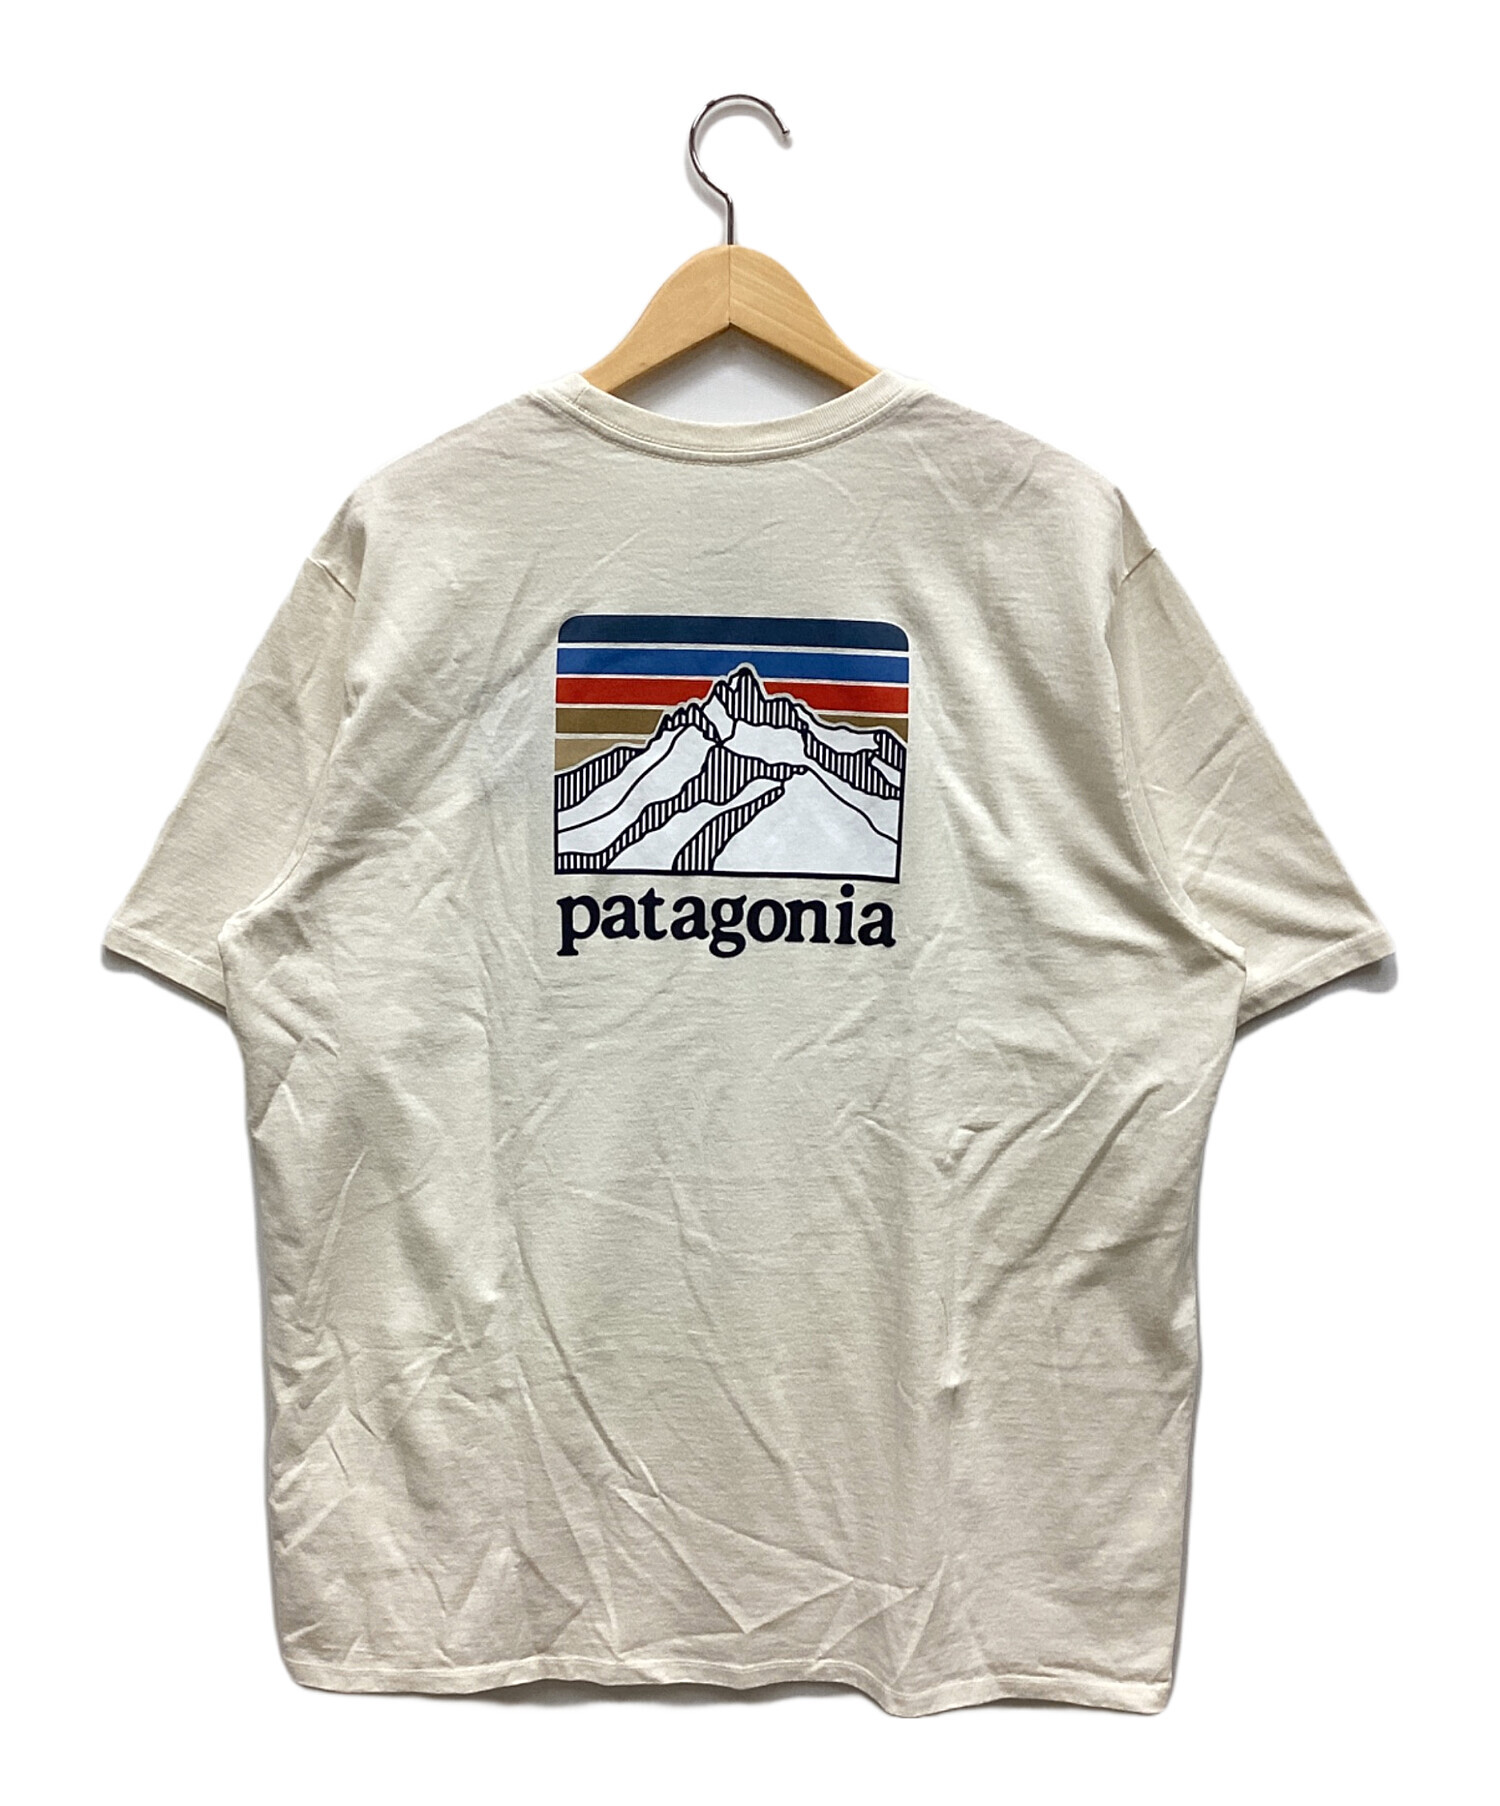 Patagonia (パタゴニア) Tシャツ ホワイト サイズ:L